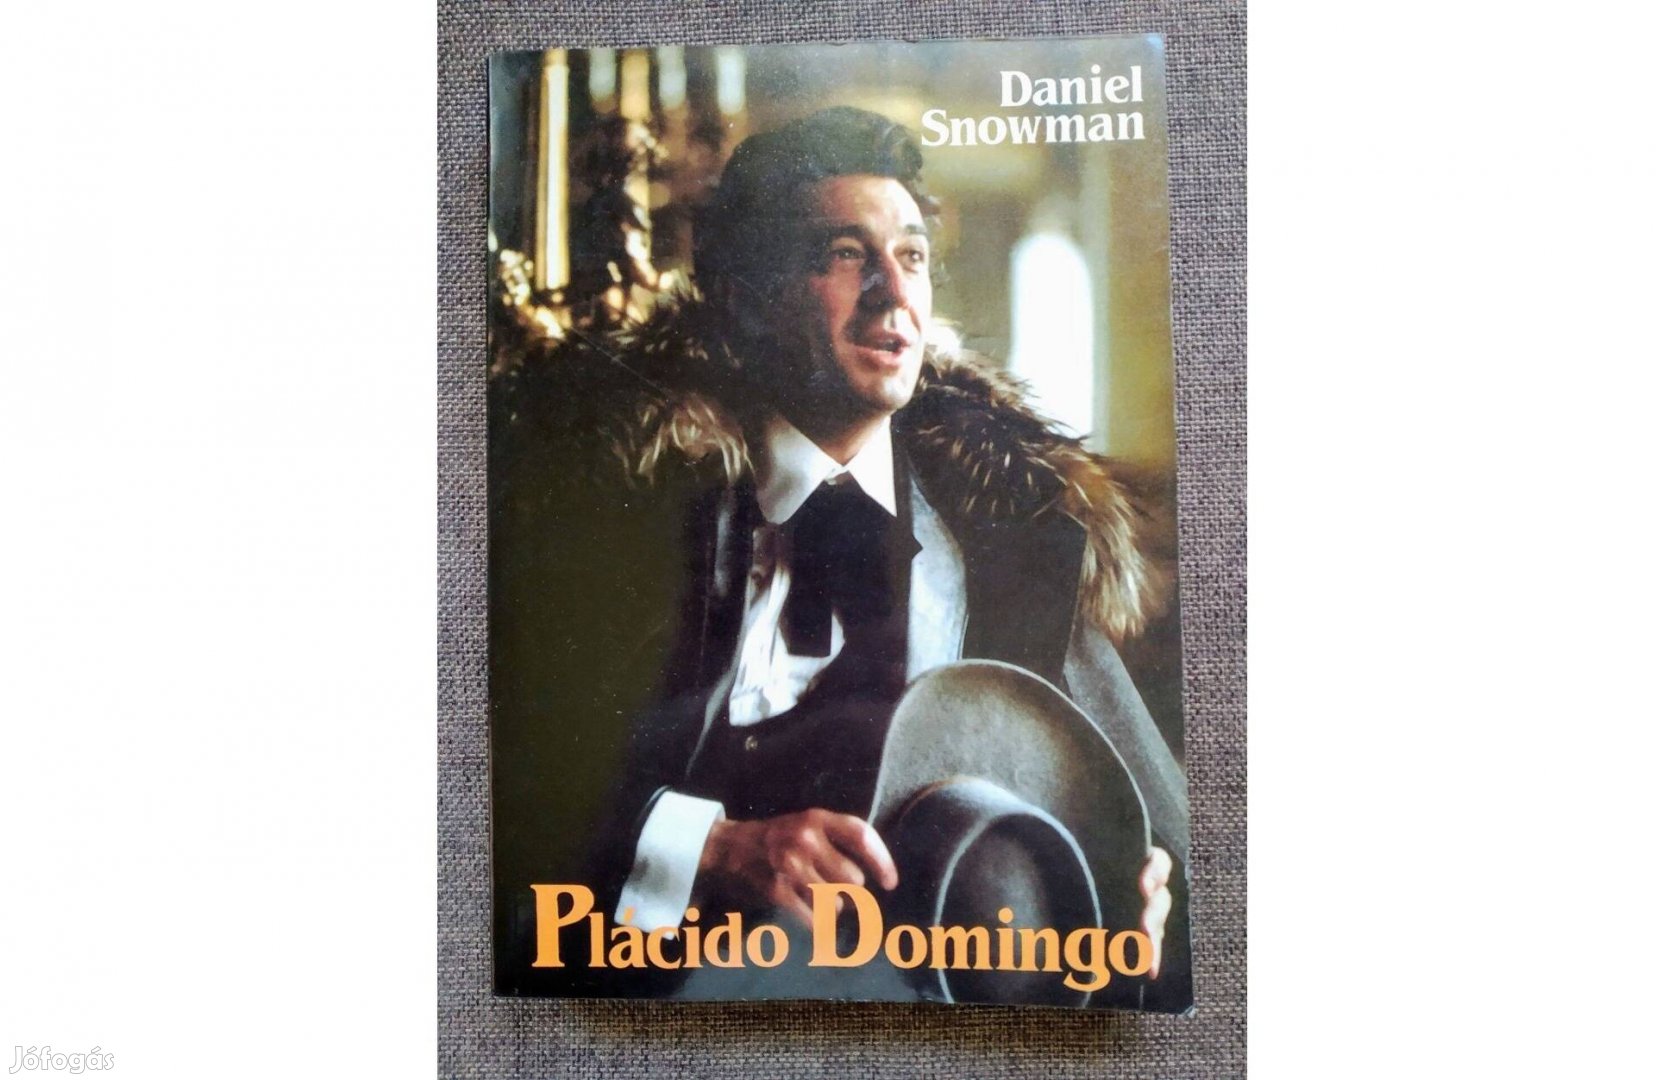 Daniel Snowman - Placido Domingo